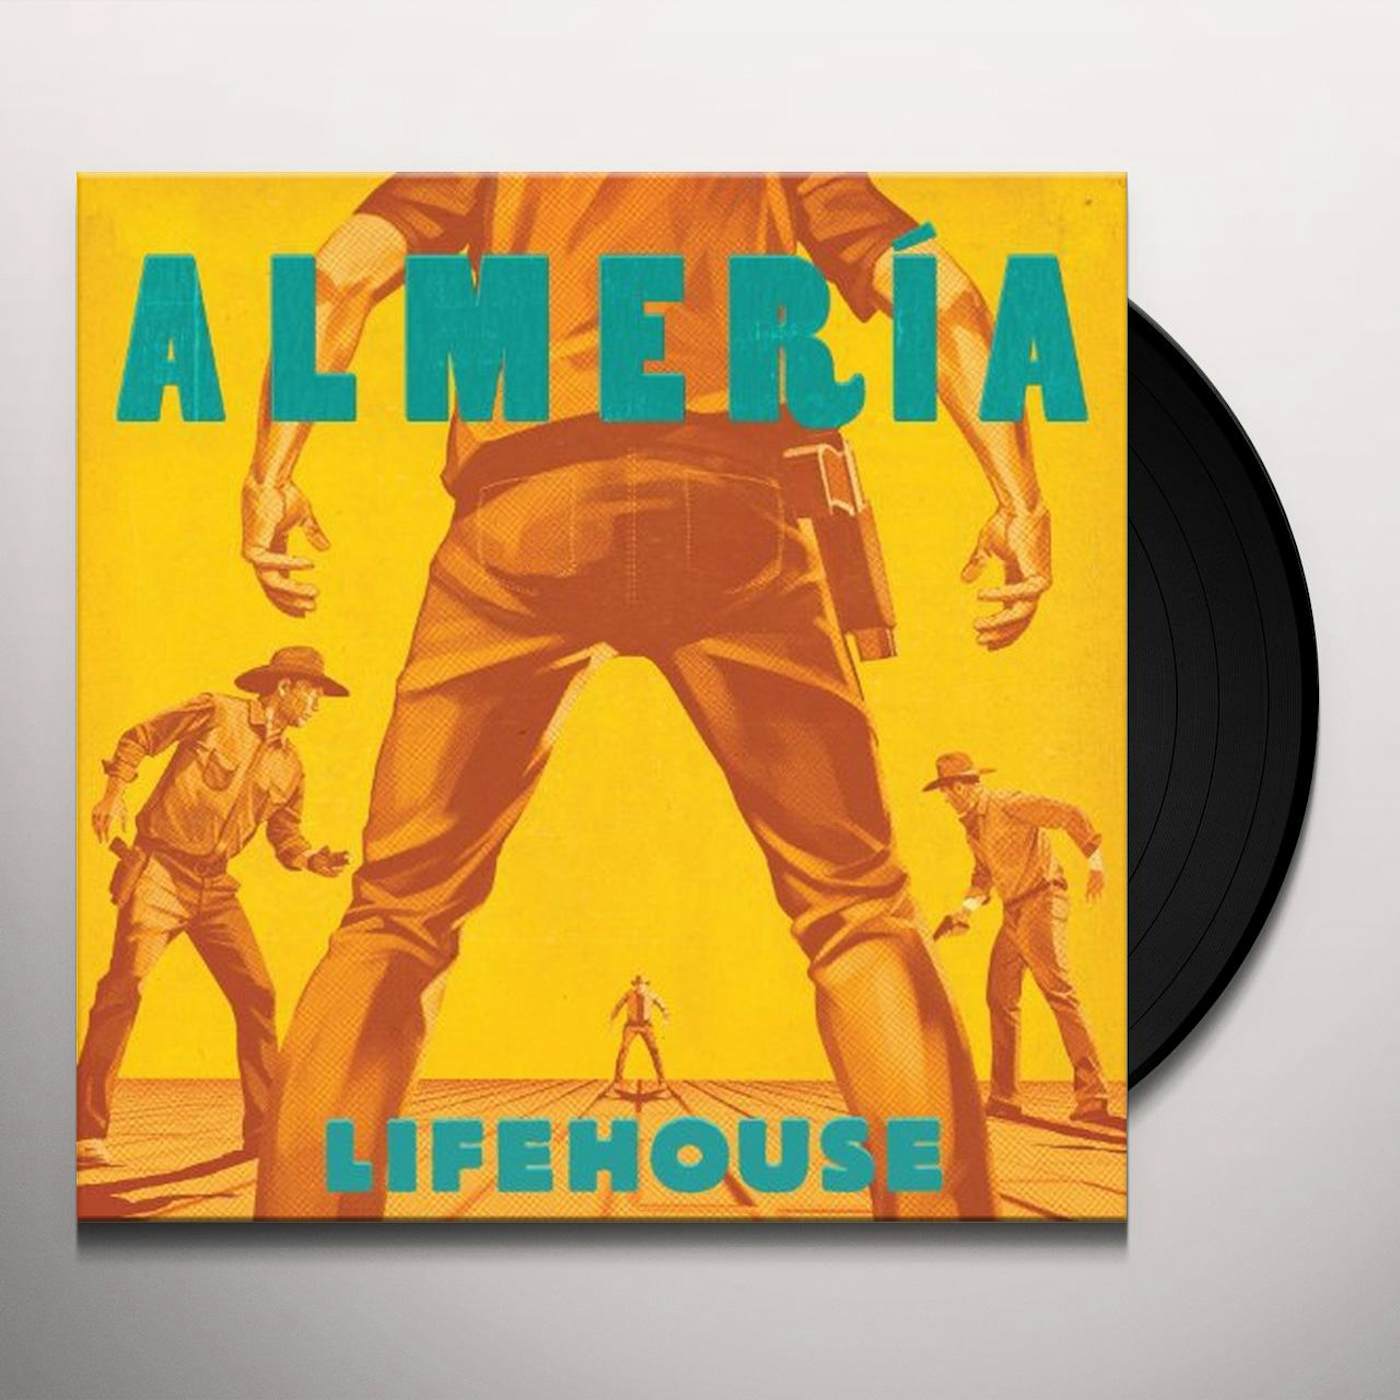 Lifehouse ALMERIA (Vinyl)